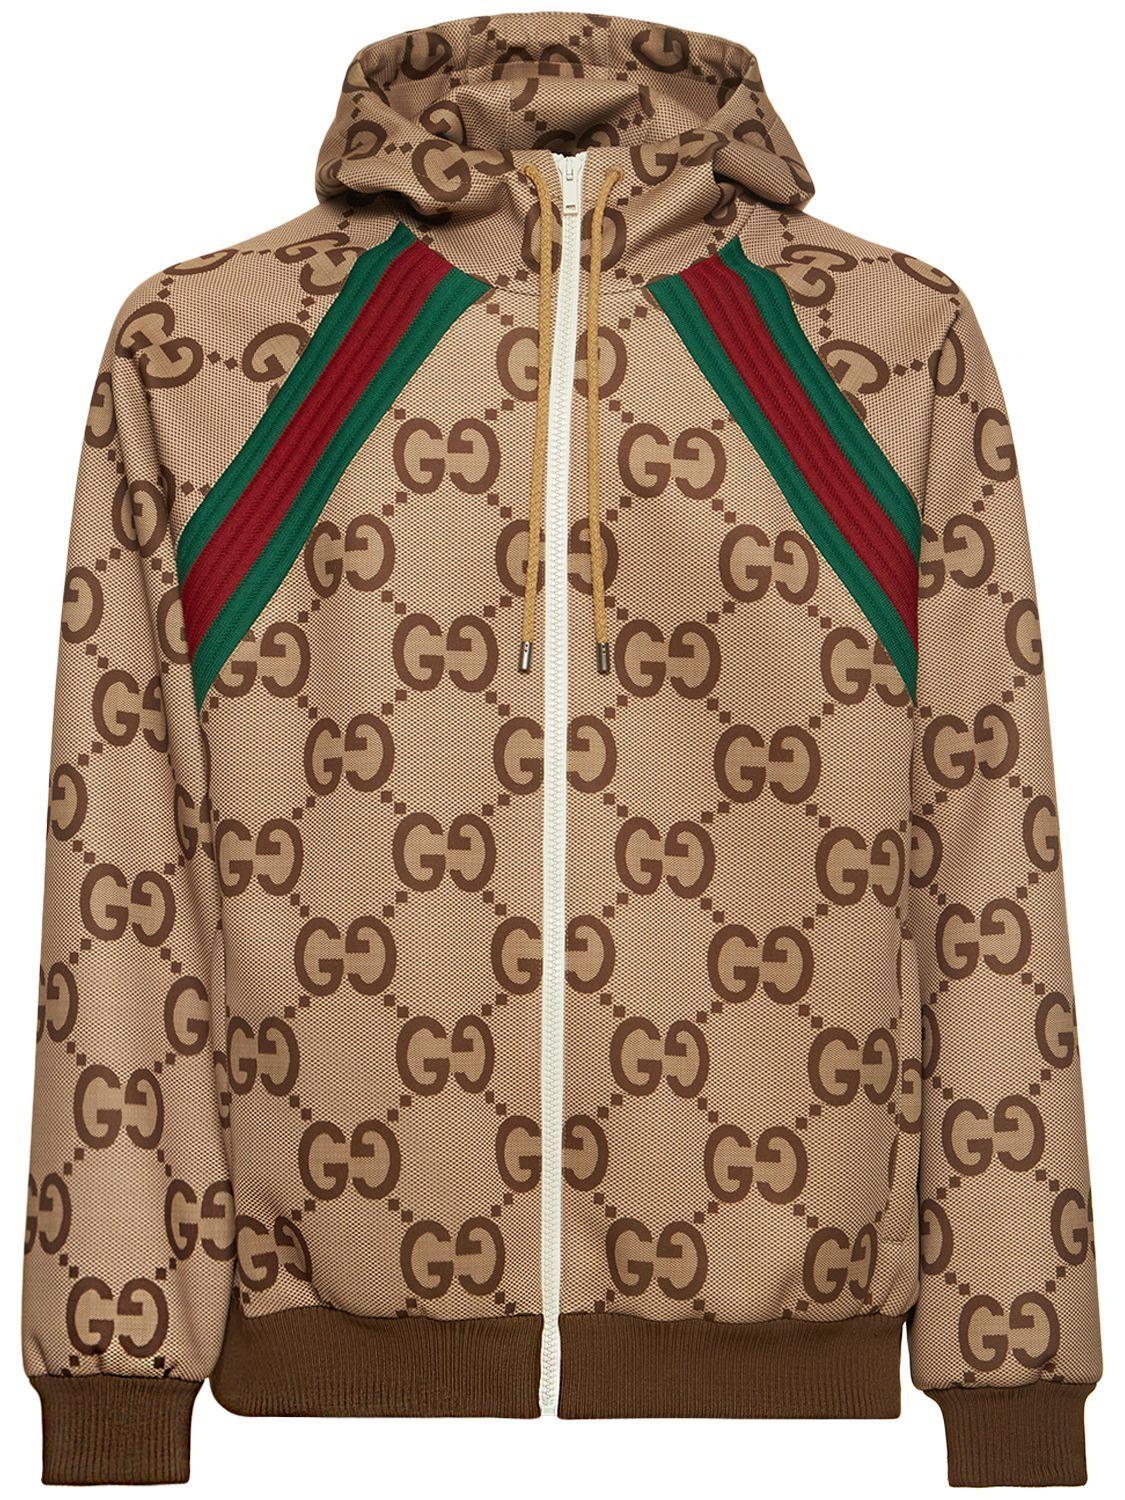 Gucci jacket zip up iuu.org.tr